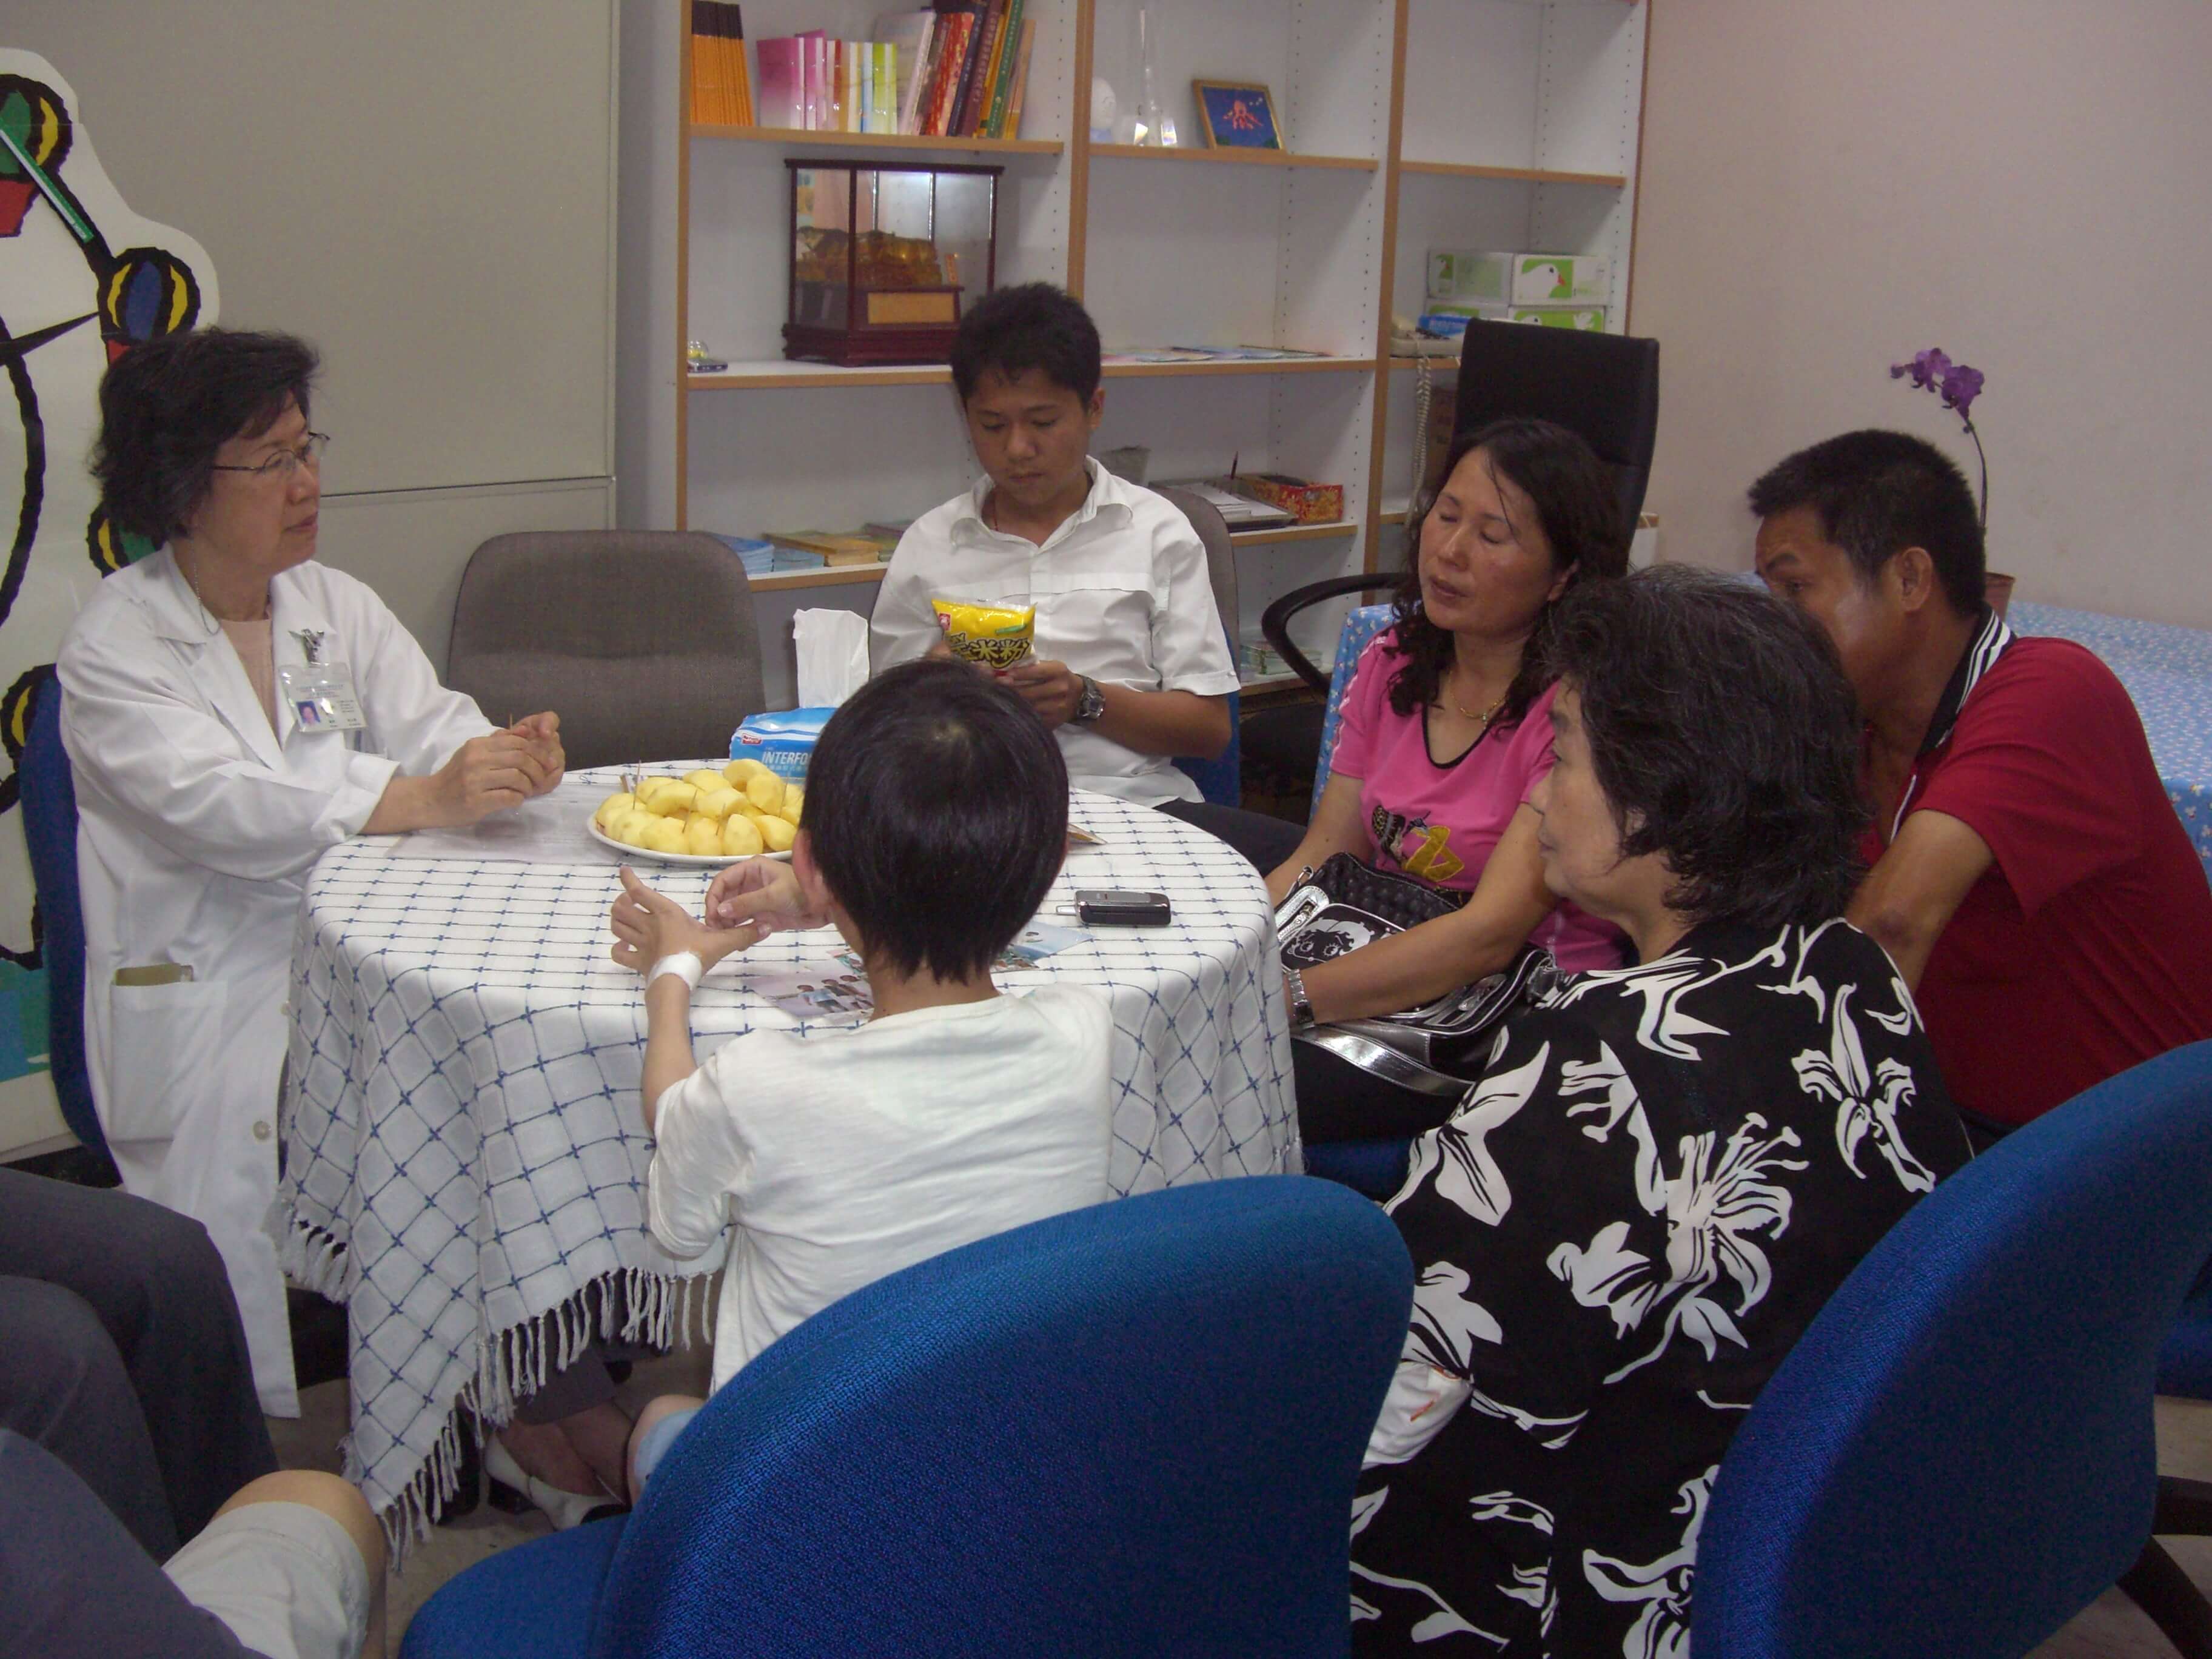 2008/05/23  徐山靜醫師舉行病友飲食指導